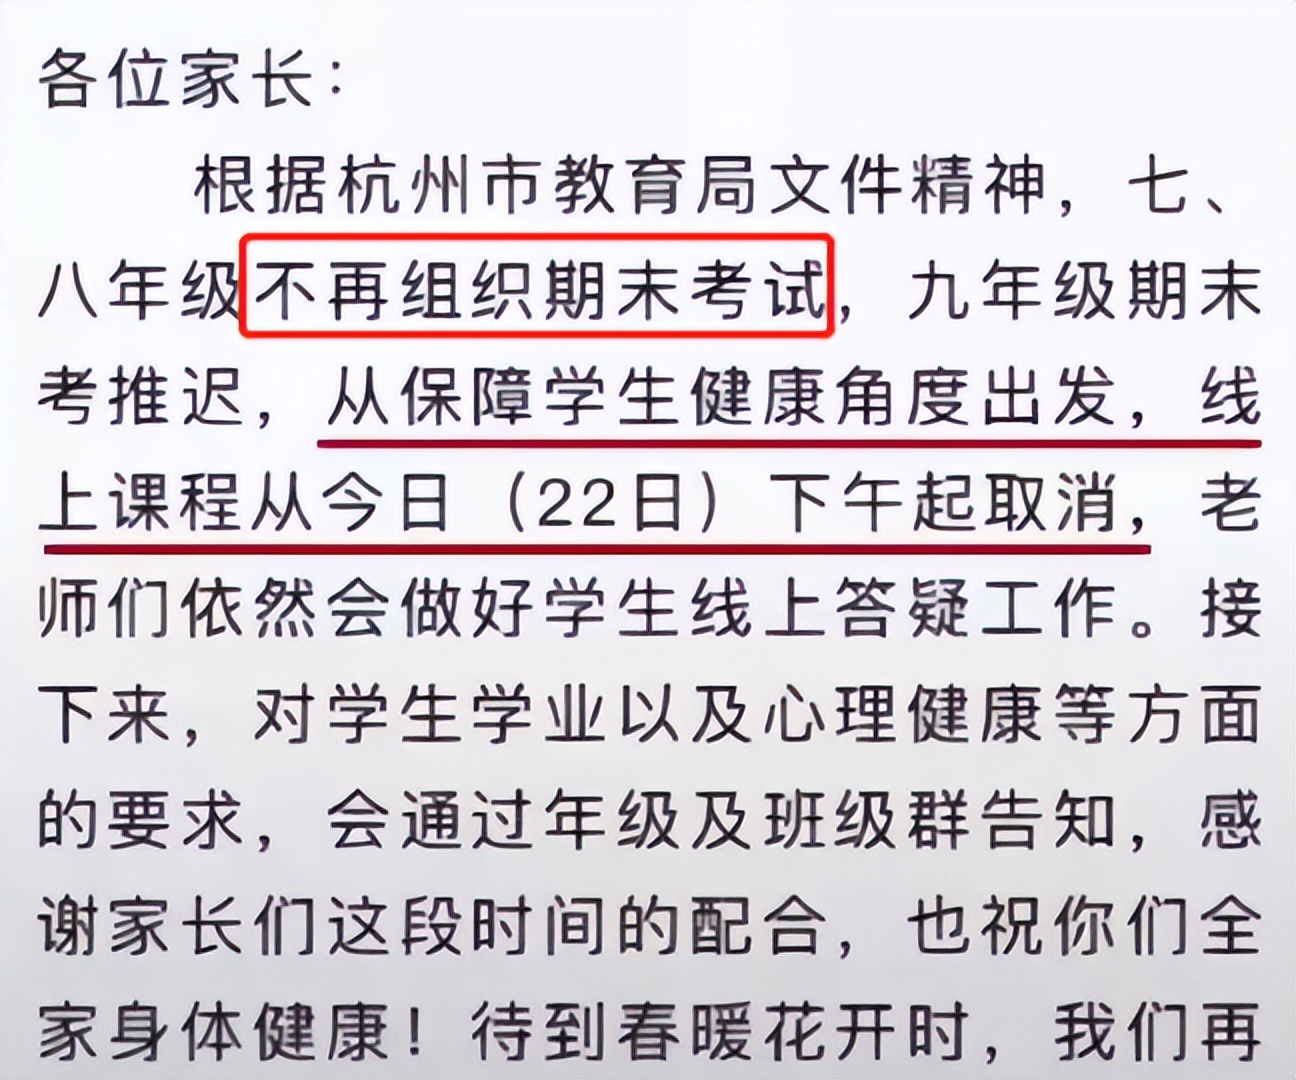 “读书不是为了考试”，杭州一中学宣布取消网课，家长拍手叫好